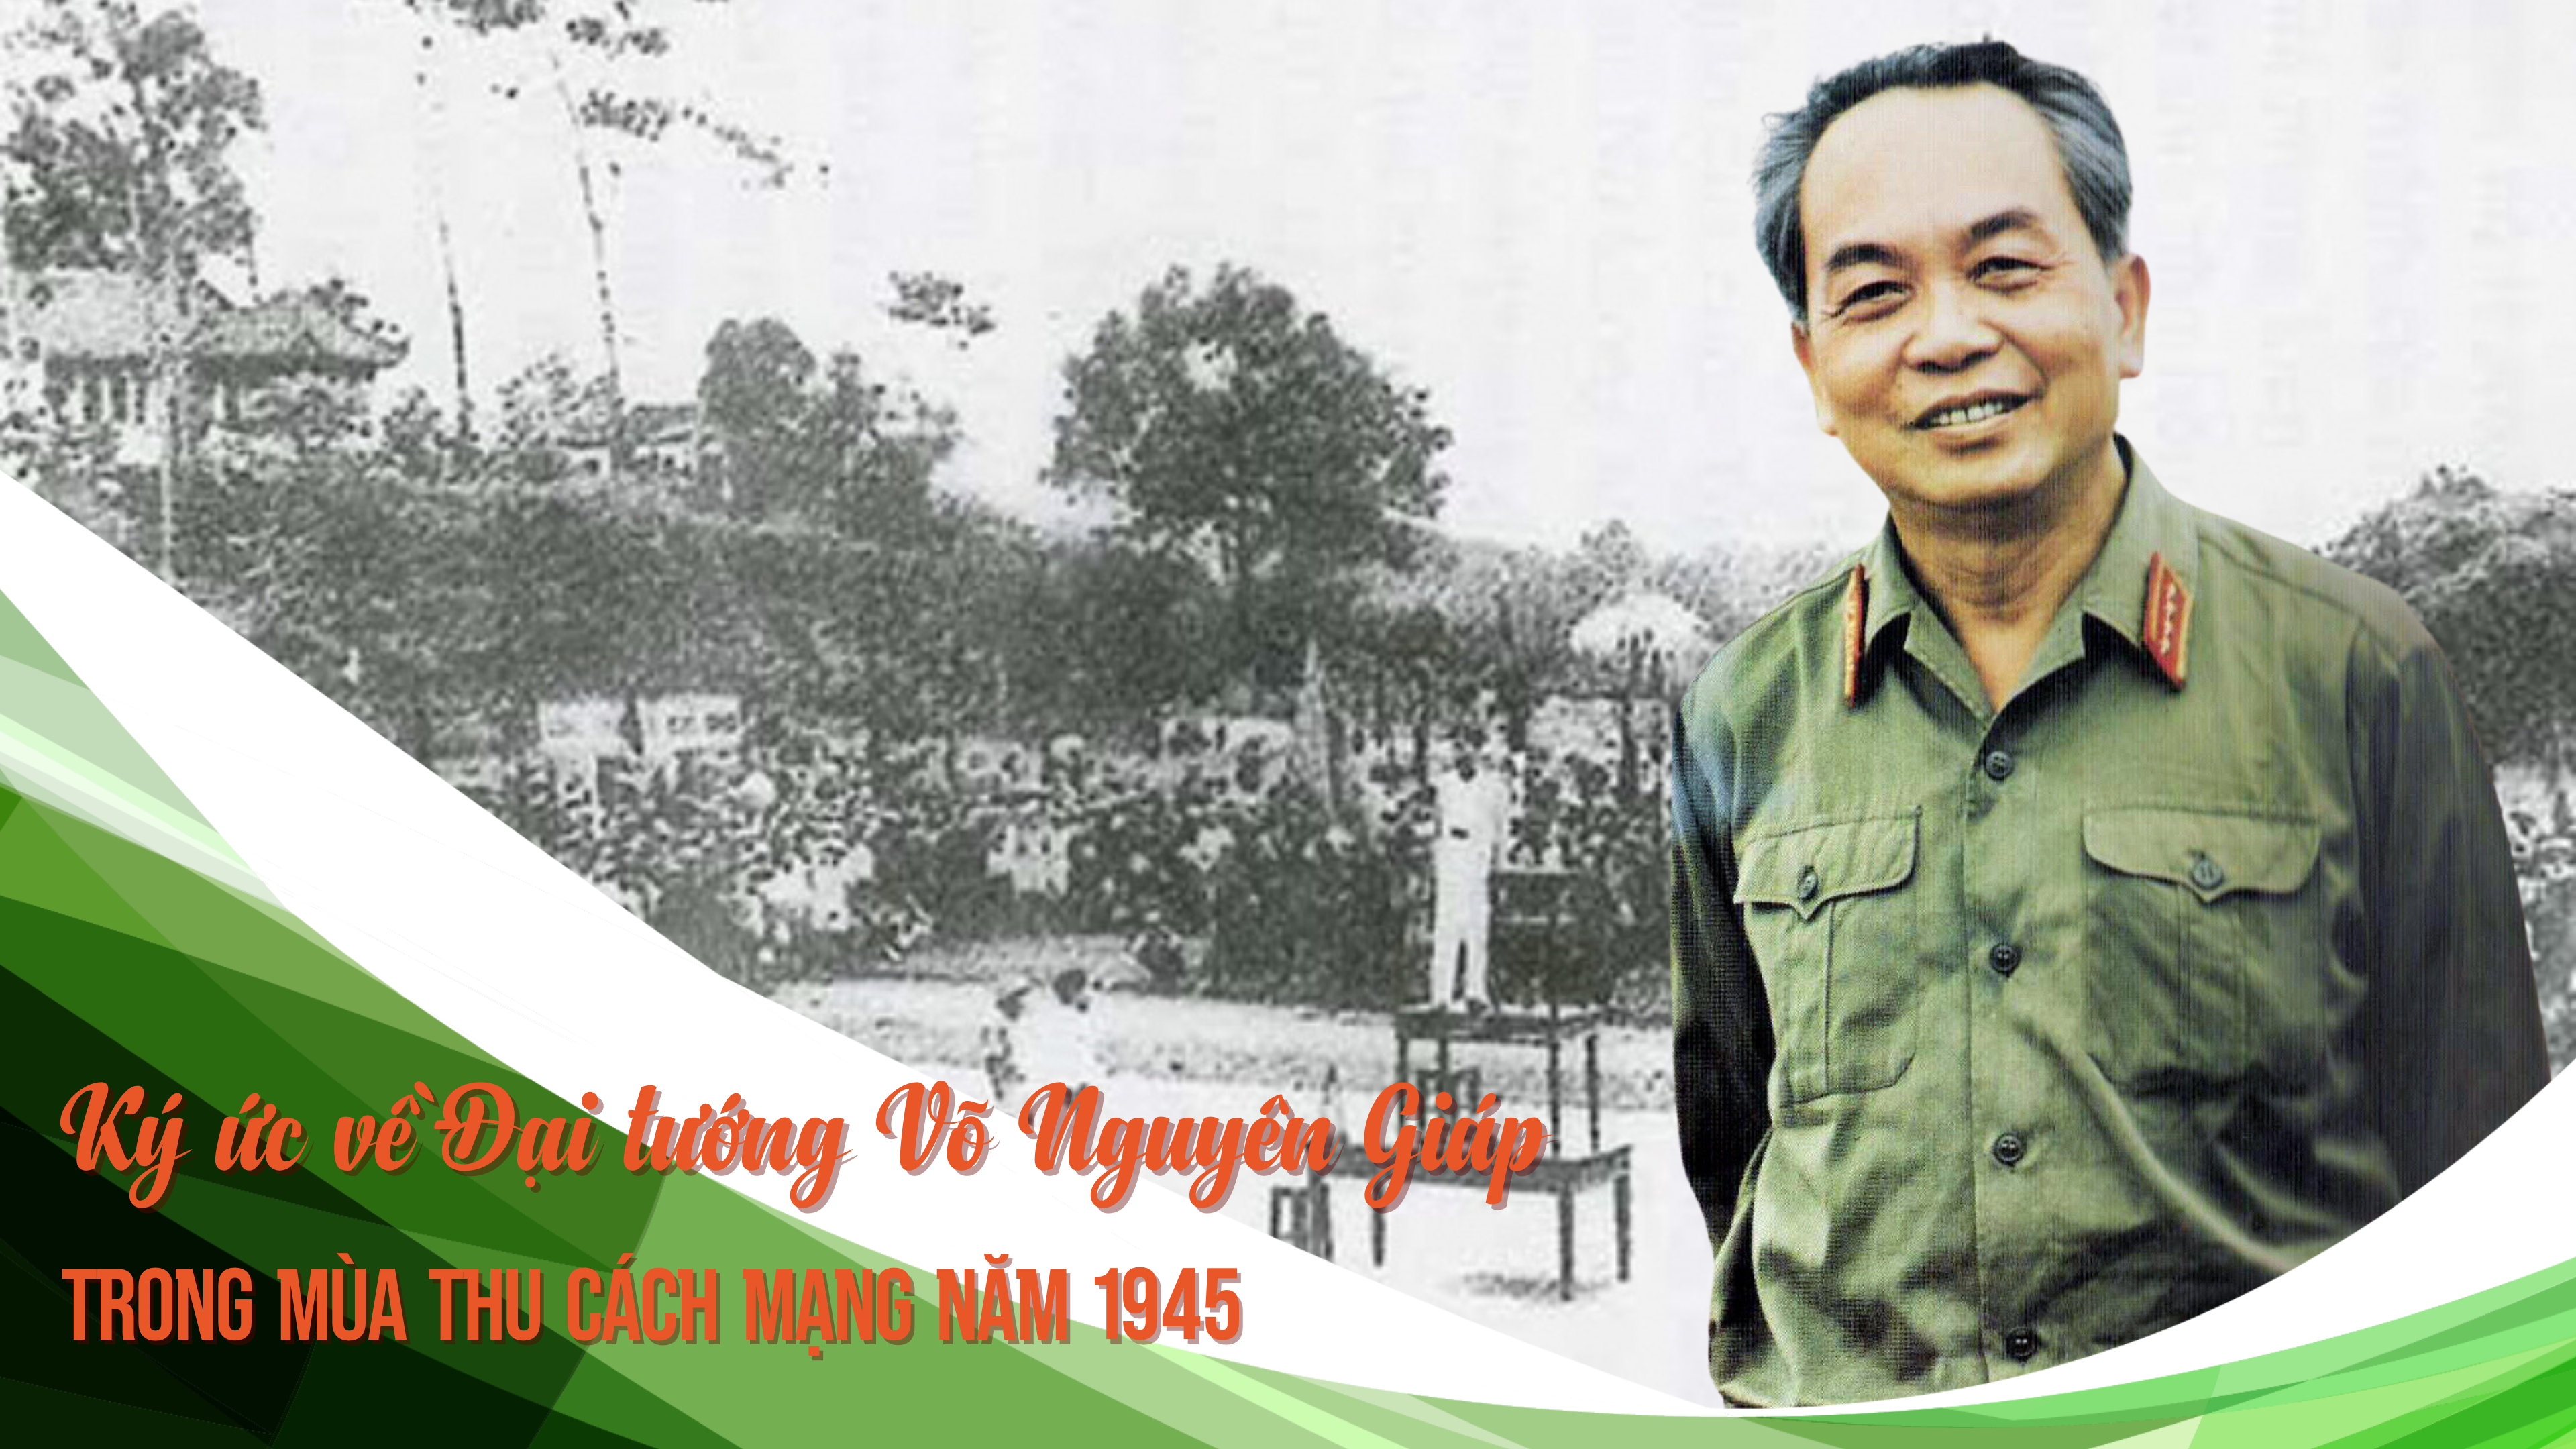 [Megastory] Đại tướng Võ Nguyên Giáp với mùa thu cách mạng năm 1945 tại Thái Nguyên